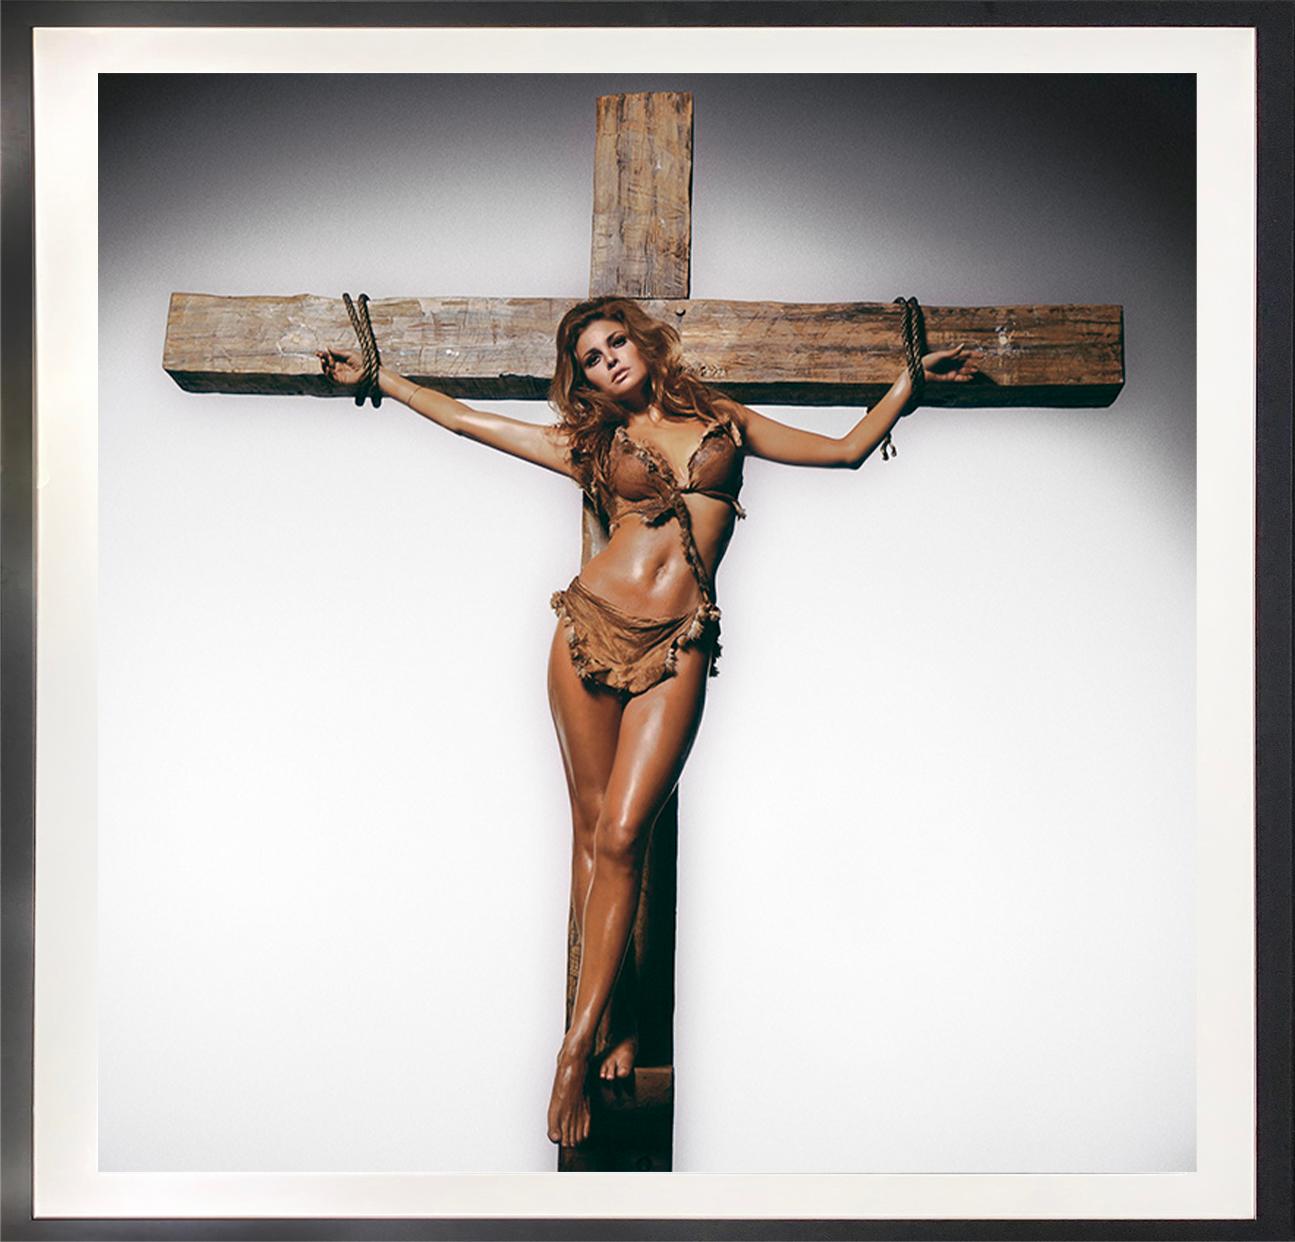 Raquel Welch am Kreuz – Photograph von Terry O'Neill